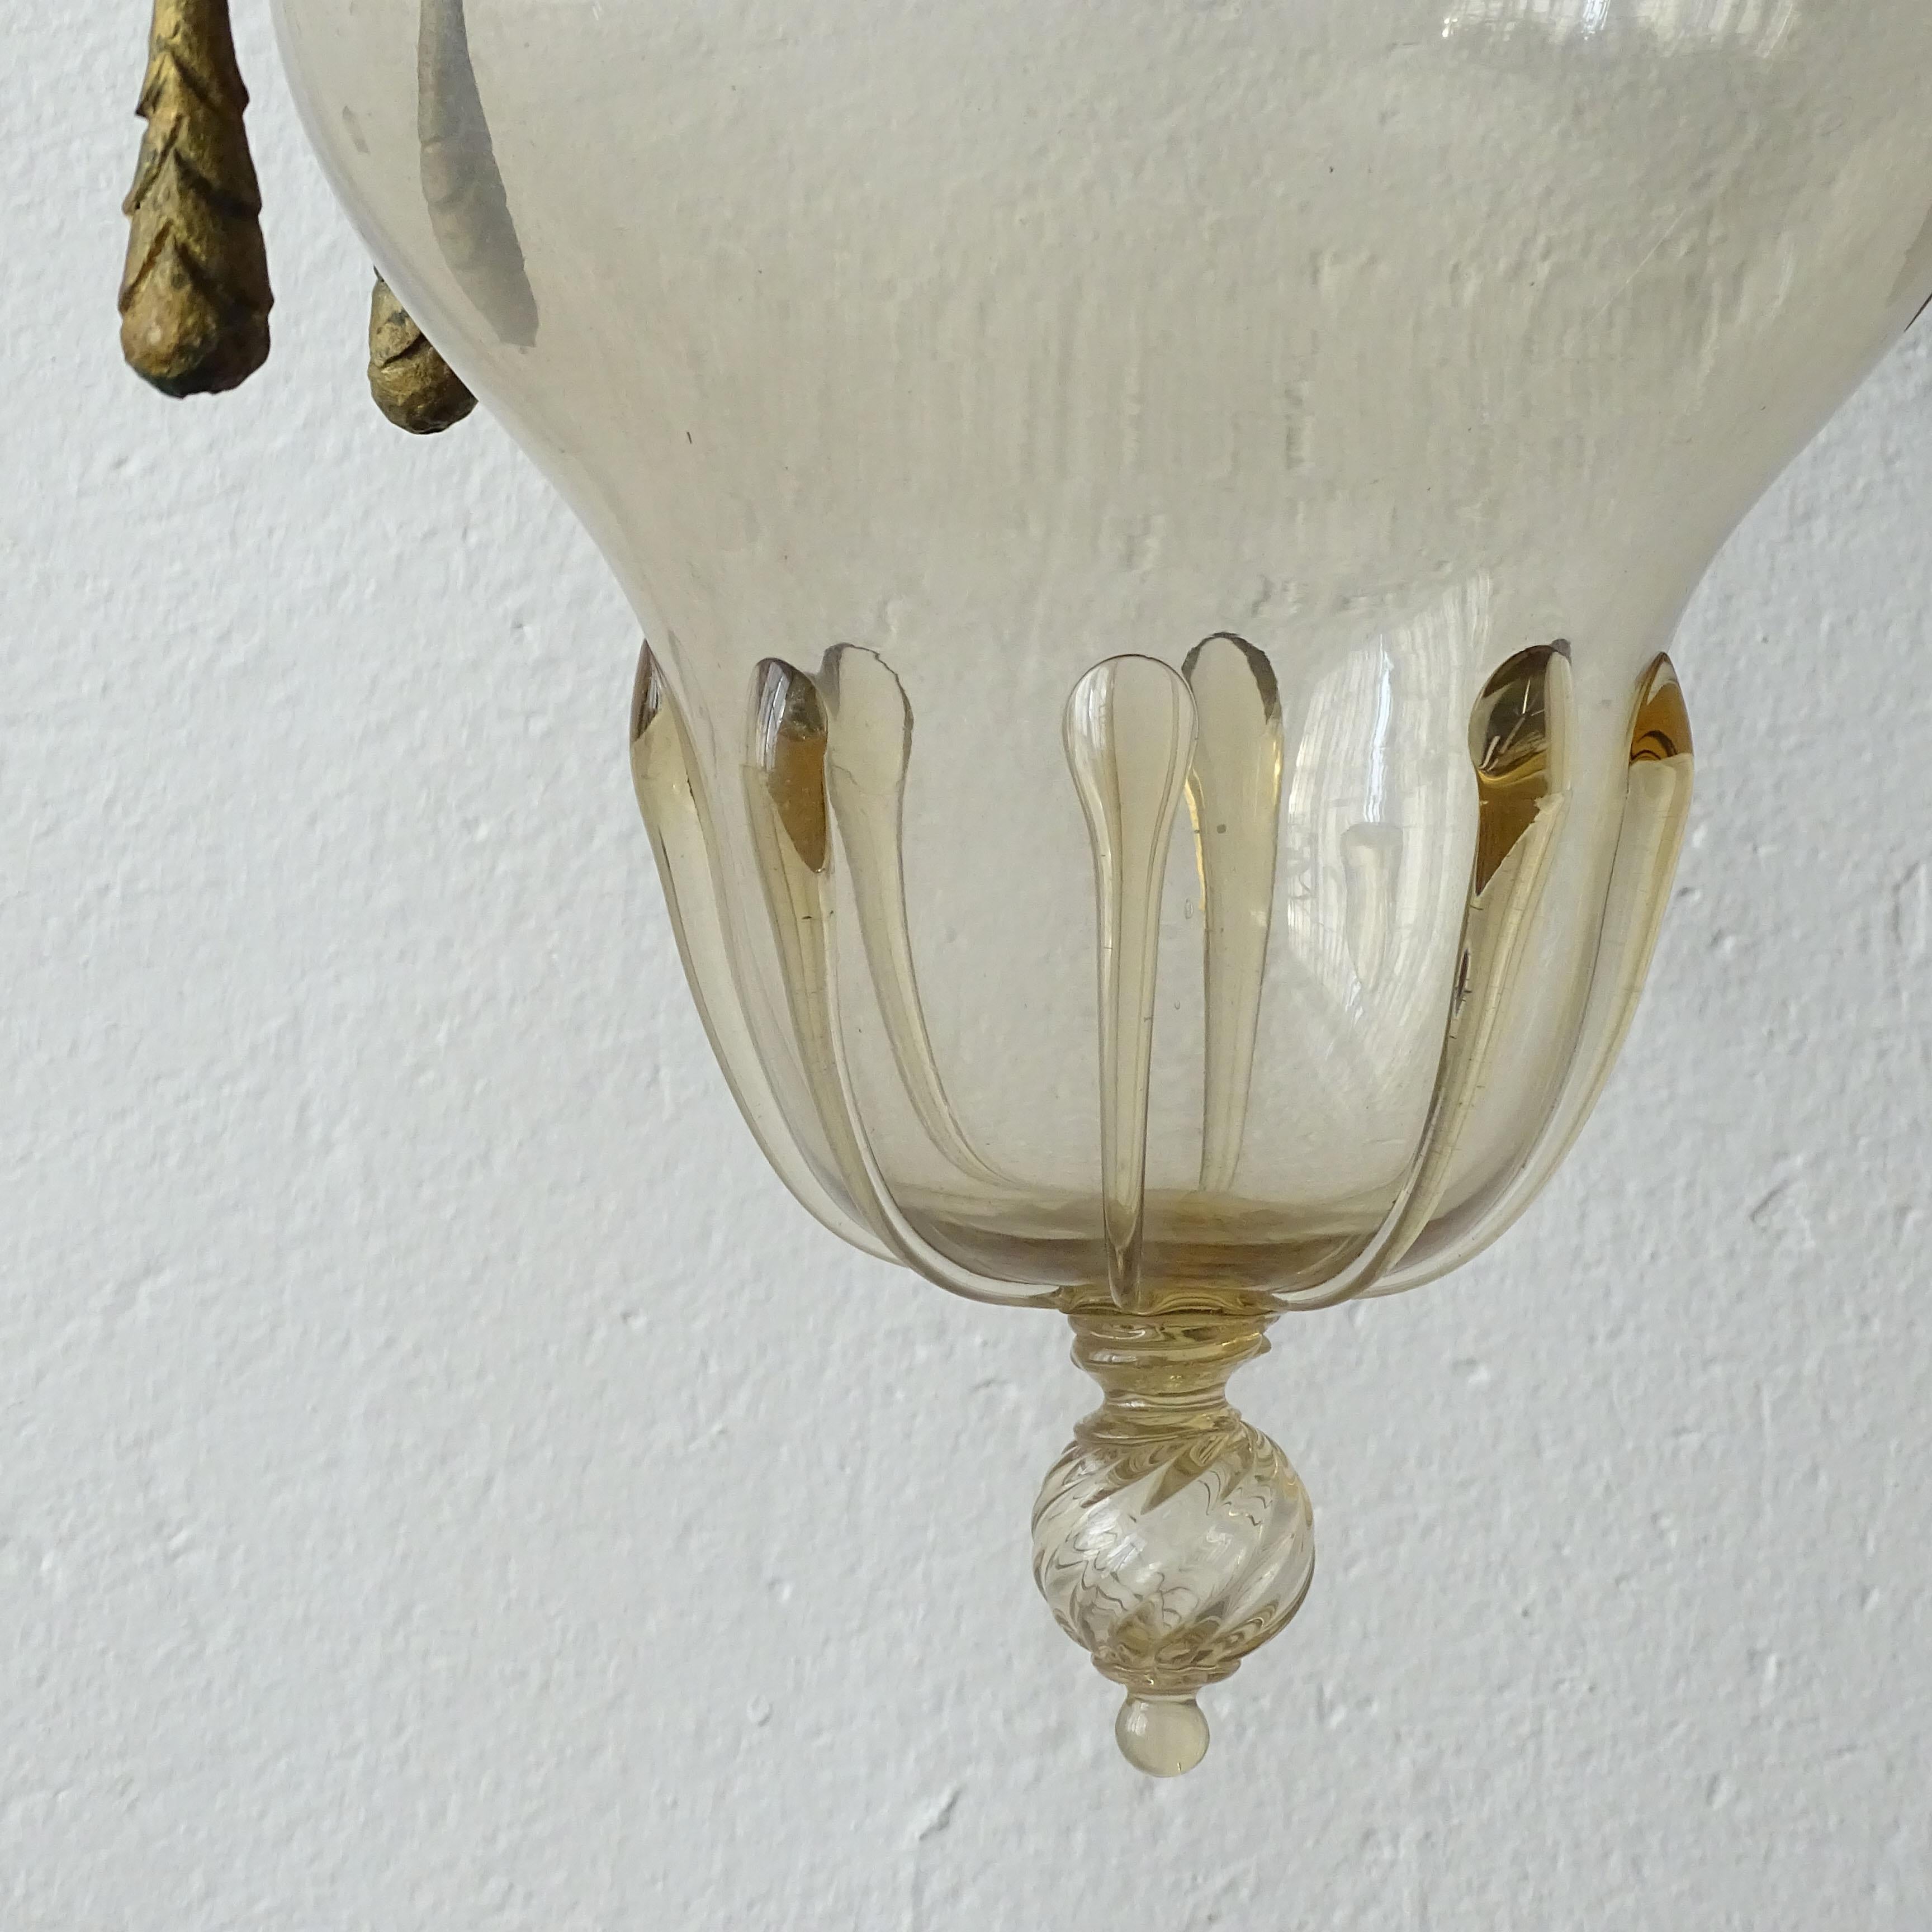 Alessandro Mazzucotelli Deckenlampe aus Schmiedeeisen und Murano-Glas, Italien 1920er Jahre (Art déco)